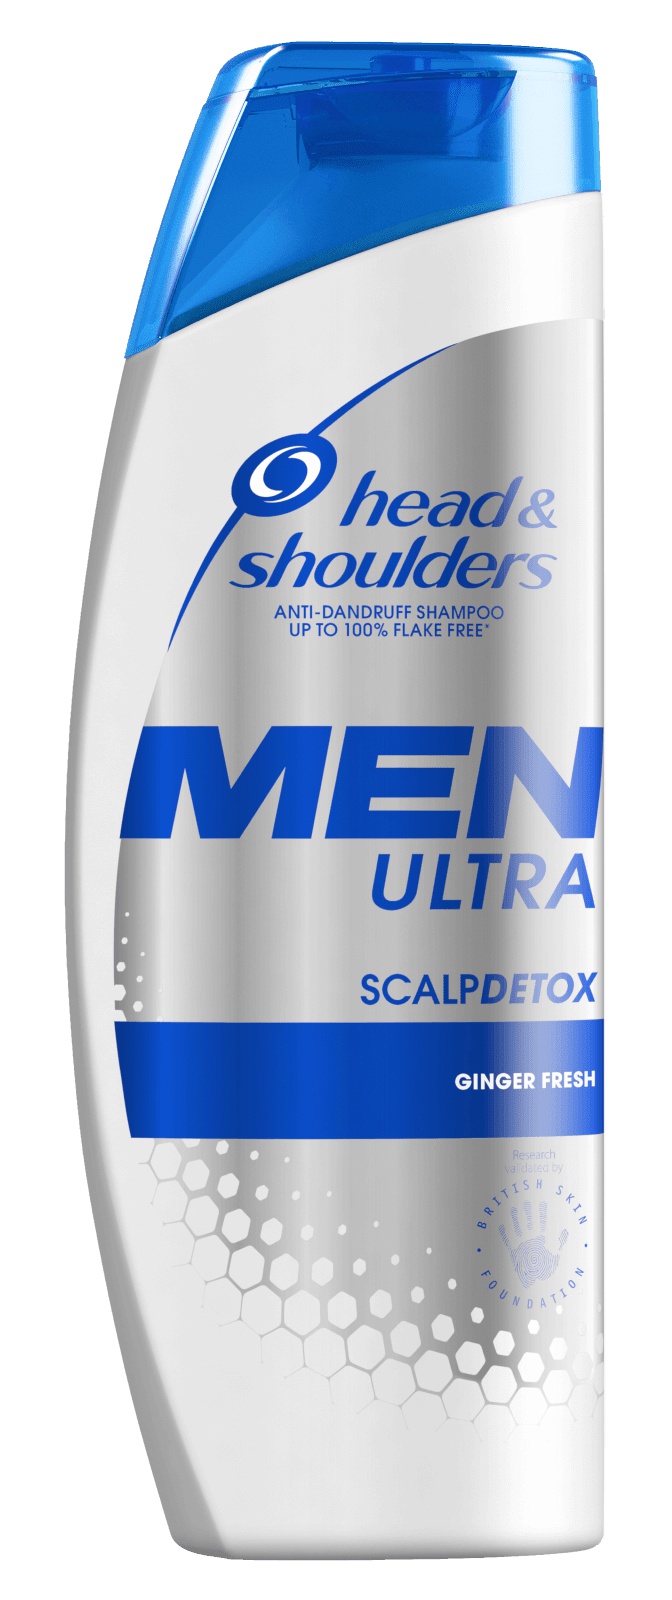 Head & Shoulders Men Ultra Scalpdetox